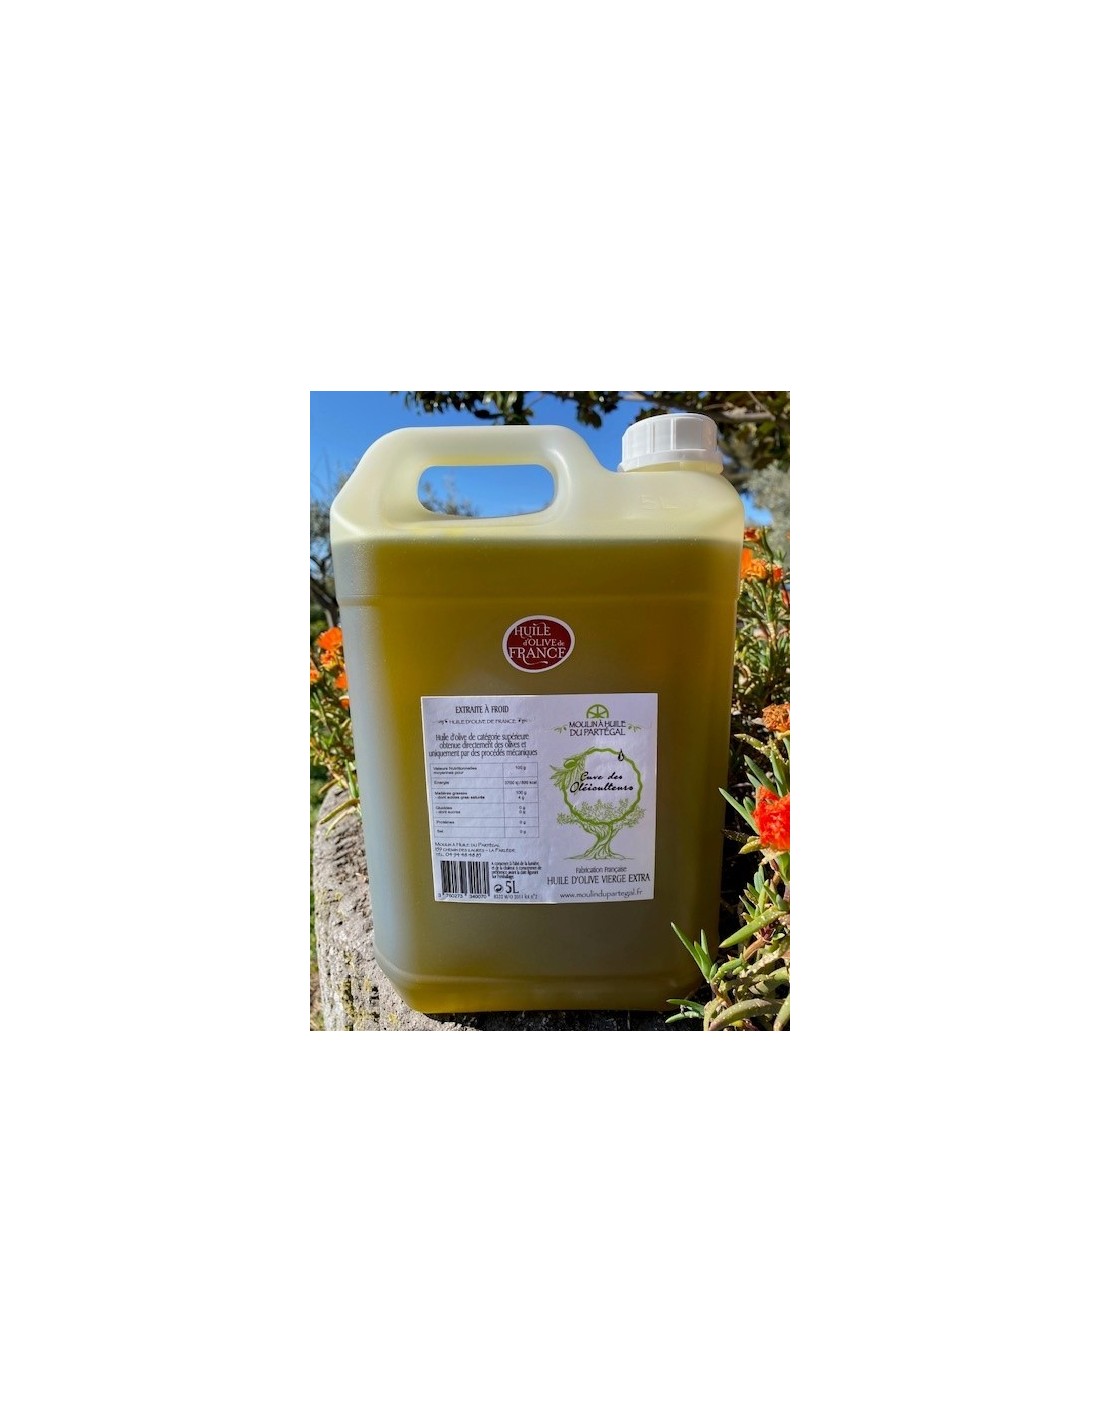 Bidon 5 Litres huile d'olive Cuve des oléiculteurs - Vieux moulin à huile  du Partégal